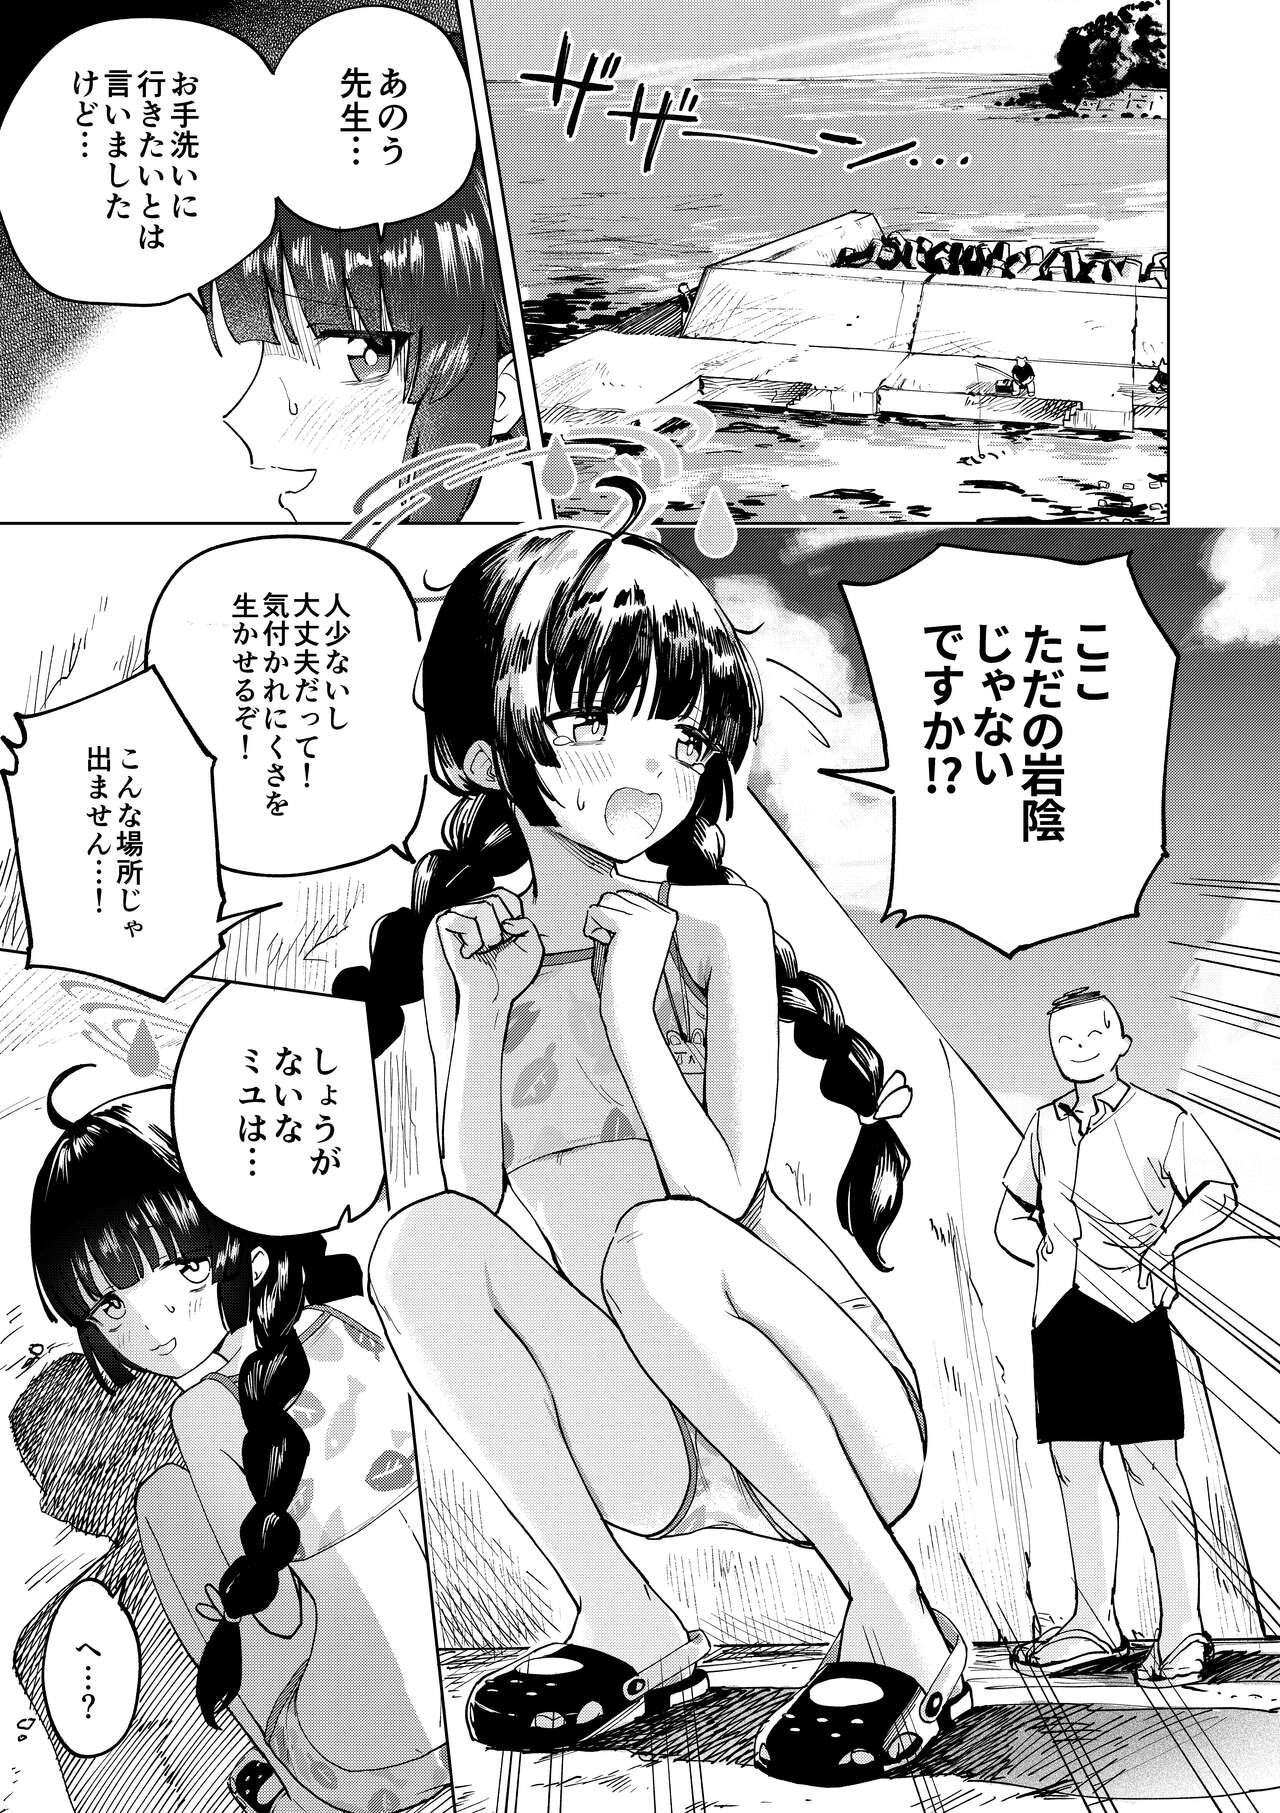 Reverse Miyu to Umi de Oshikko suru Manga - Blue archive Pasivo - Picture 1